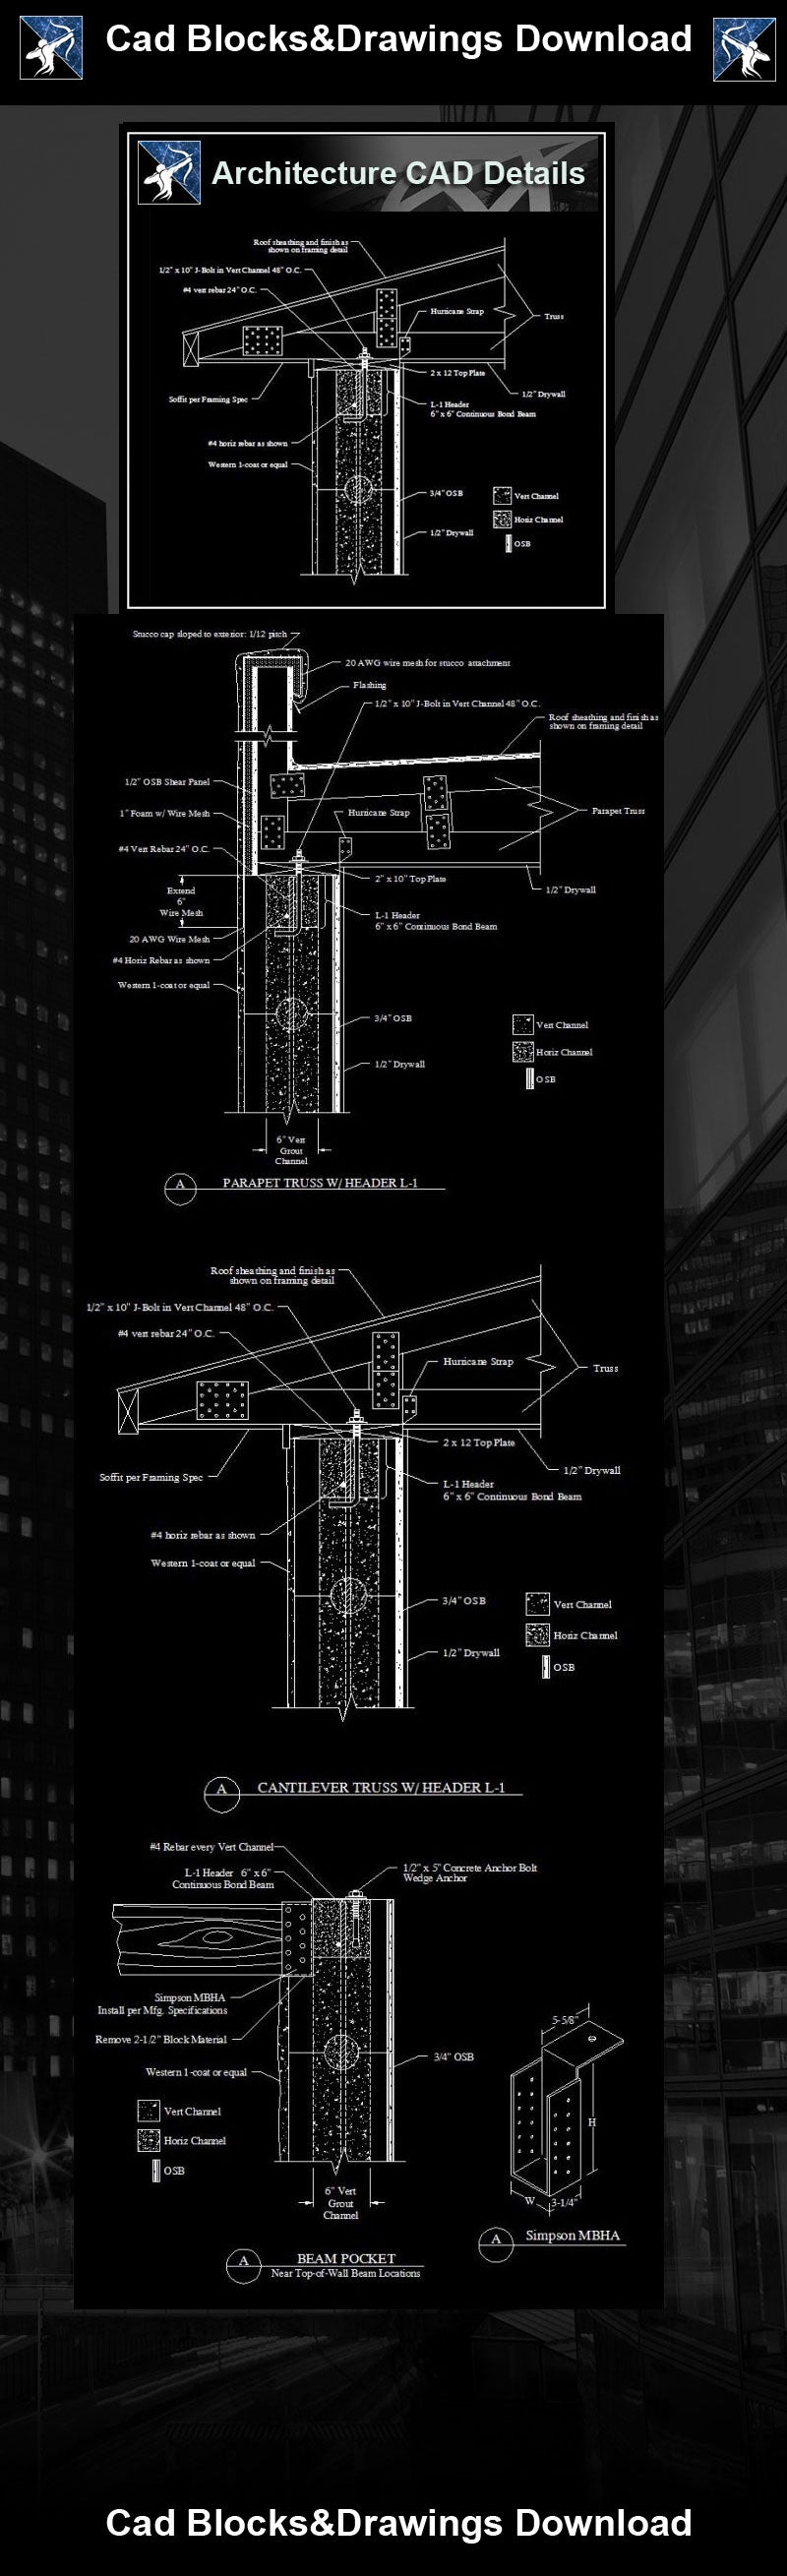 ★【Architecture Details】Header Details